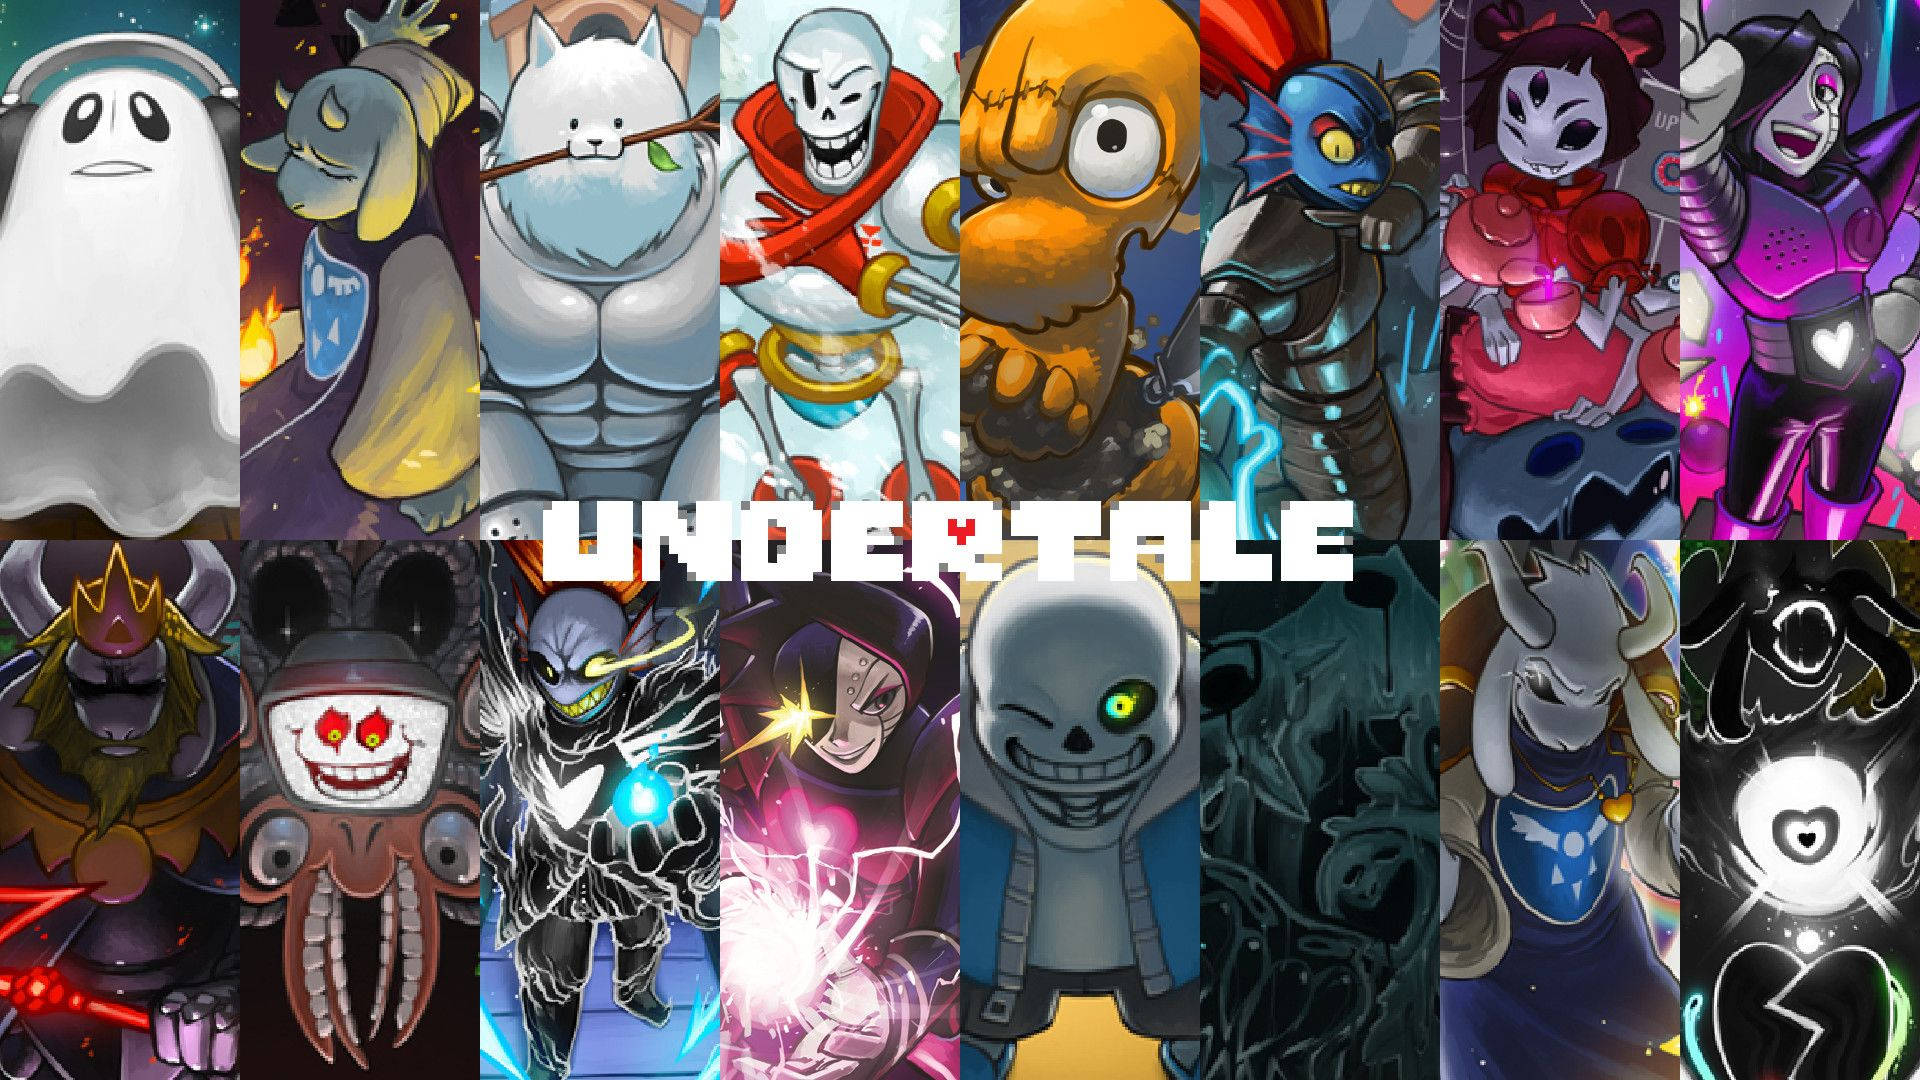 Bạn yêu thích game Undertale và đang tìm kiếm ảnh nền đẹp cho điện thoại hay máy tính của mình? Hãy truy cập ngay để tải về những bức ảnh nền Undertale miễn phí độc đáo và đẹp mắt nhất.